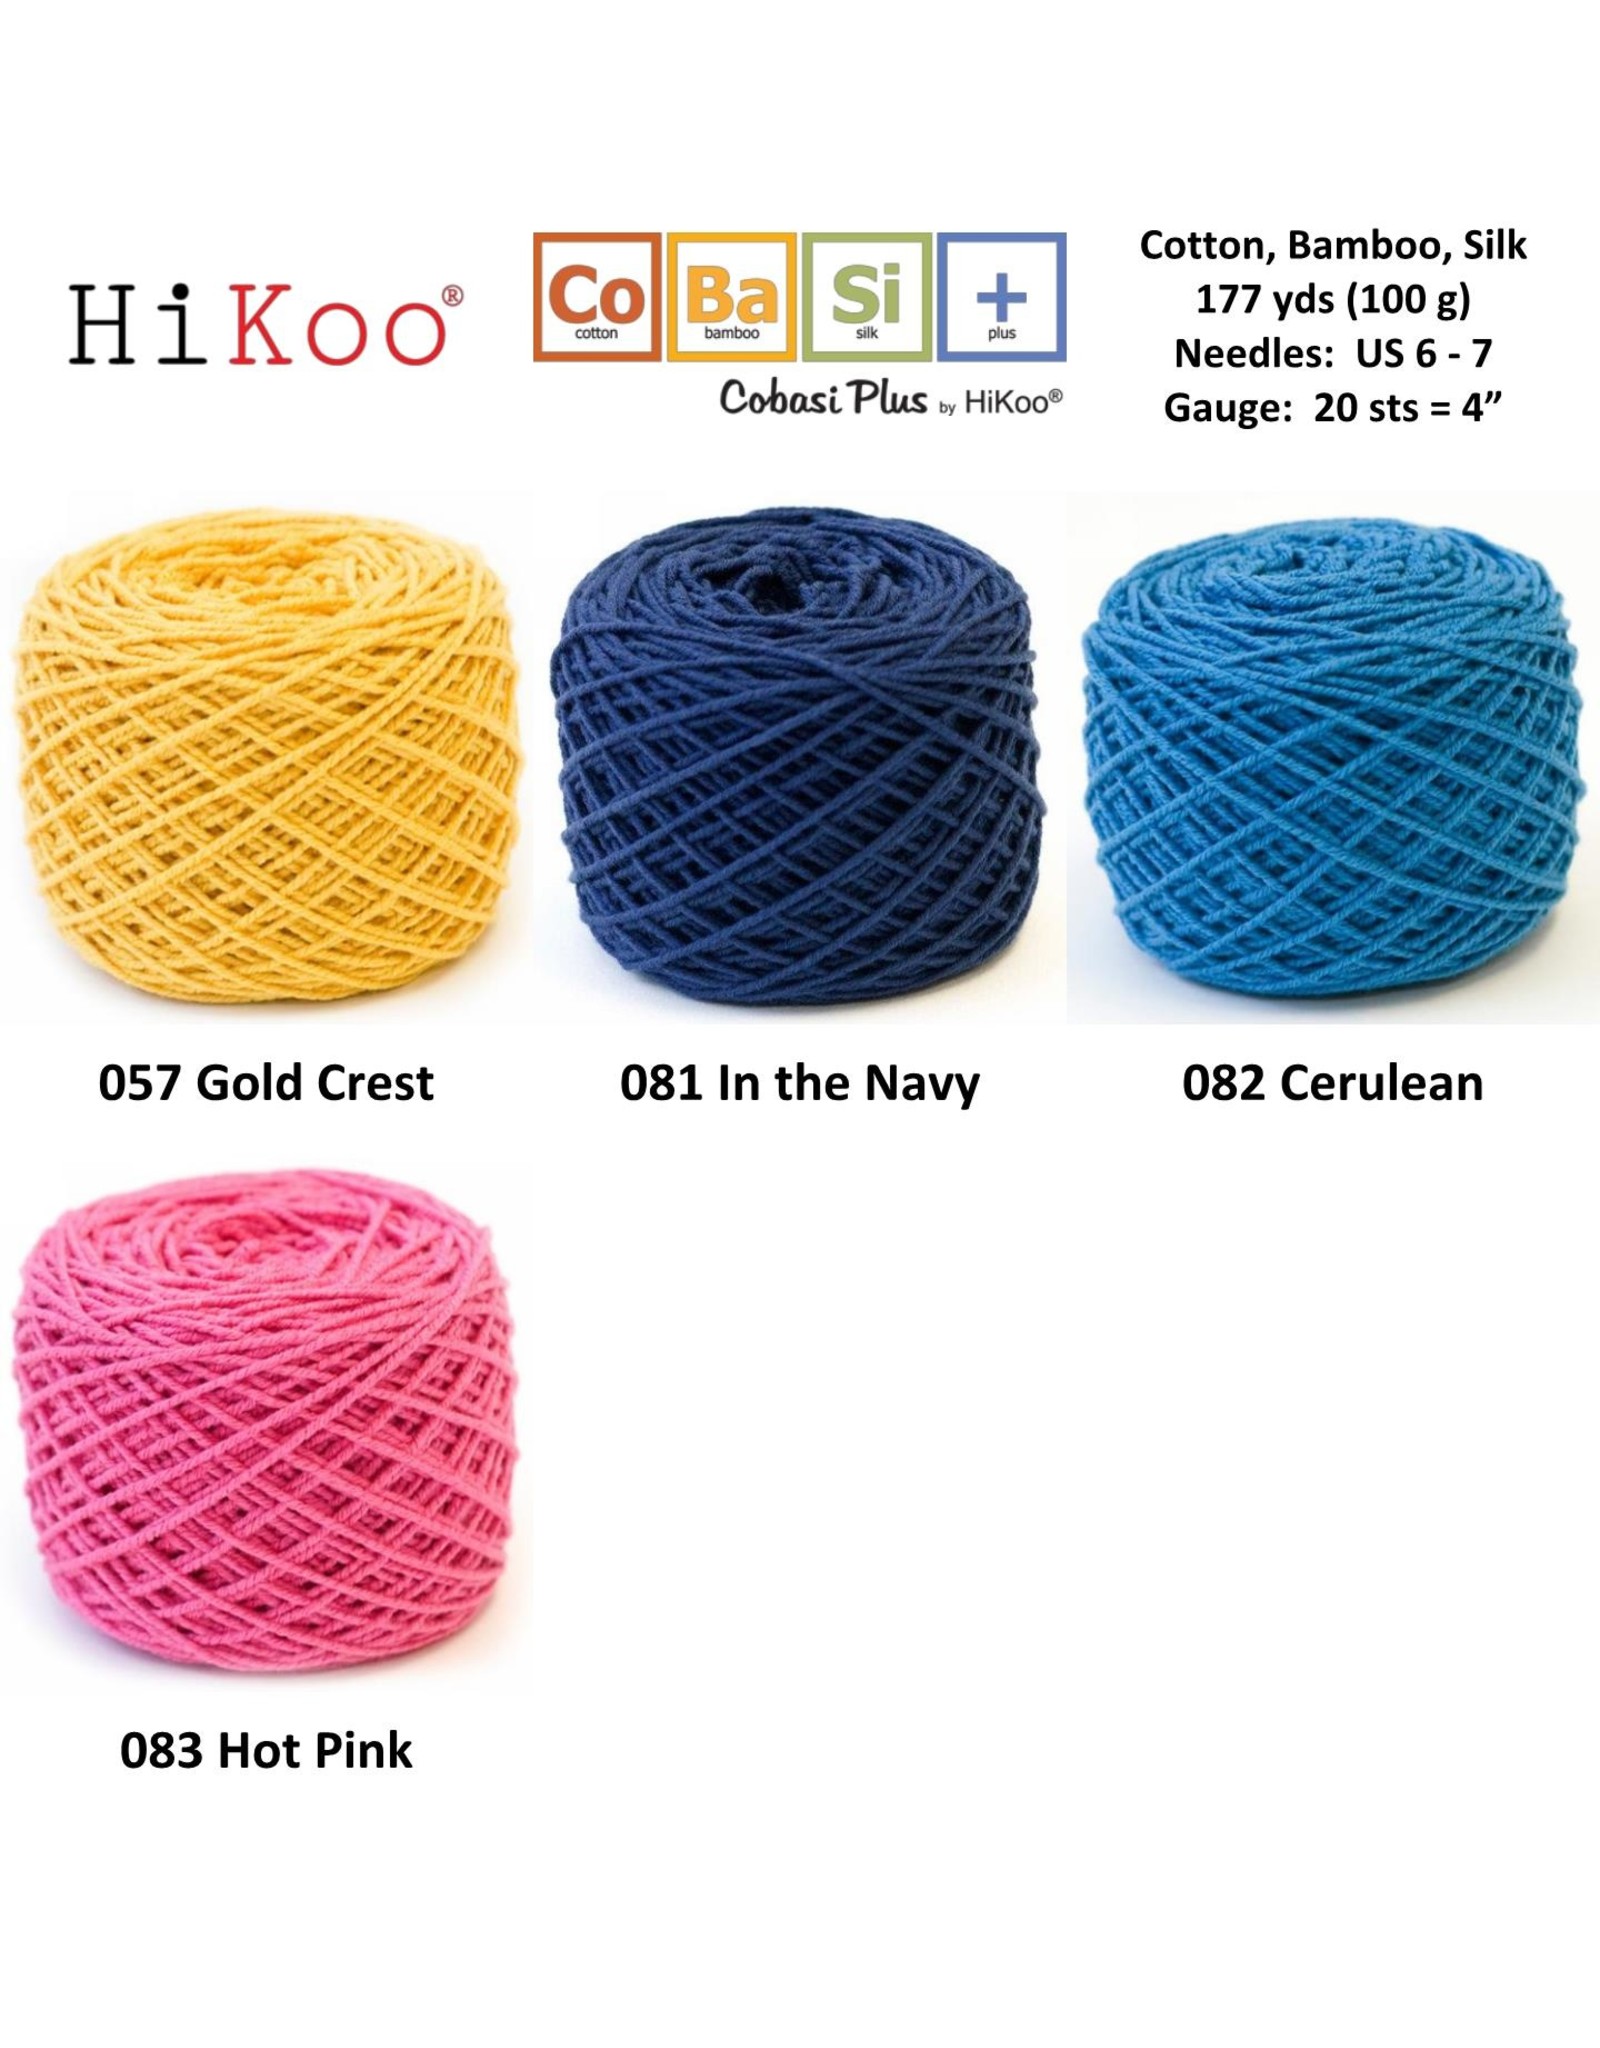 Hikoo HiKoo Cobasi Plus Yarn